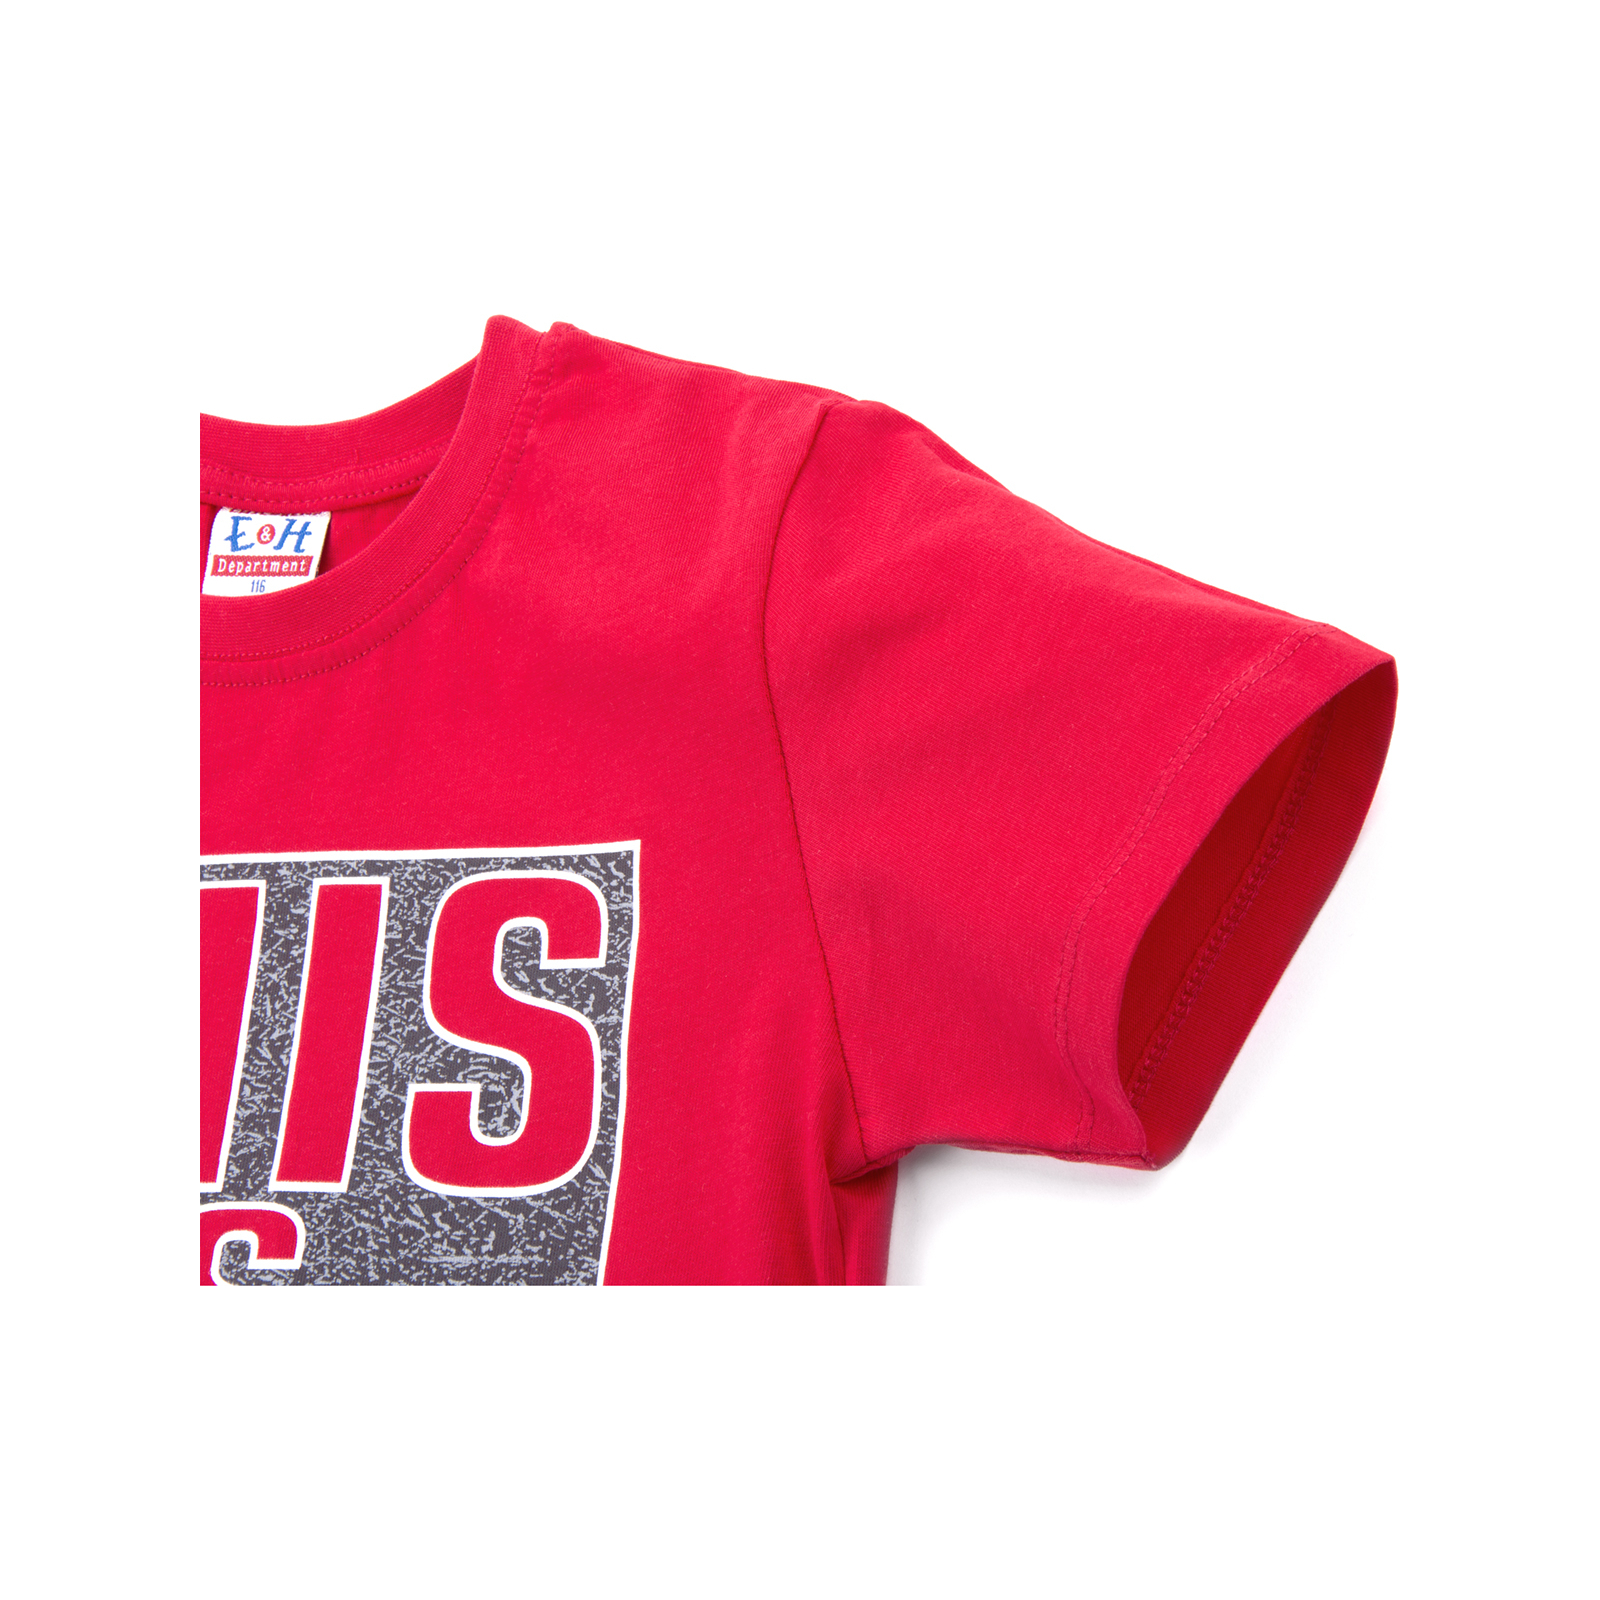 Набор детской одежды Breeze футболка "This is me" с шортами (8939-134B-red) изображение 5